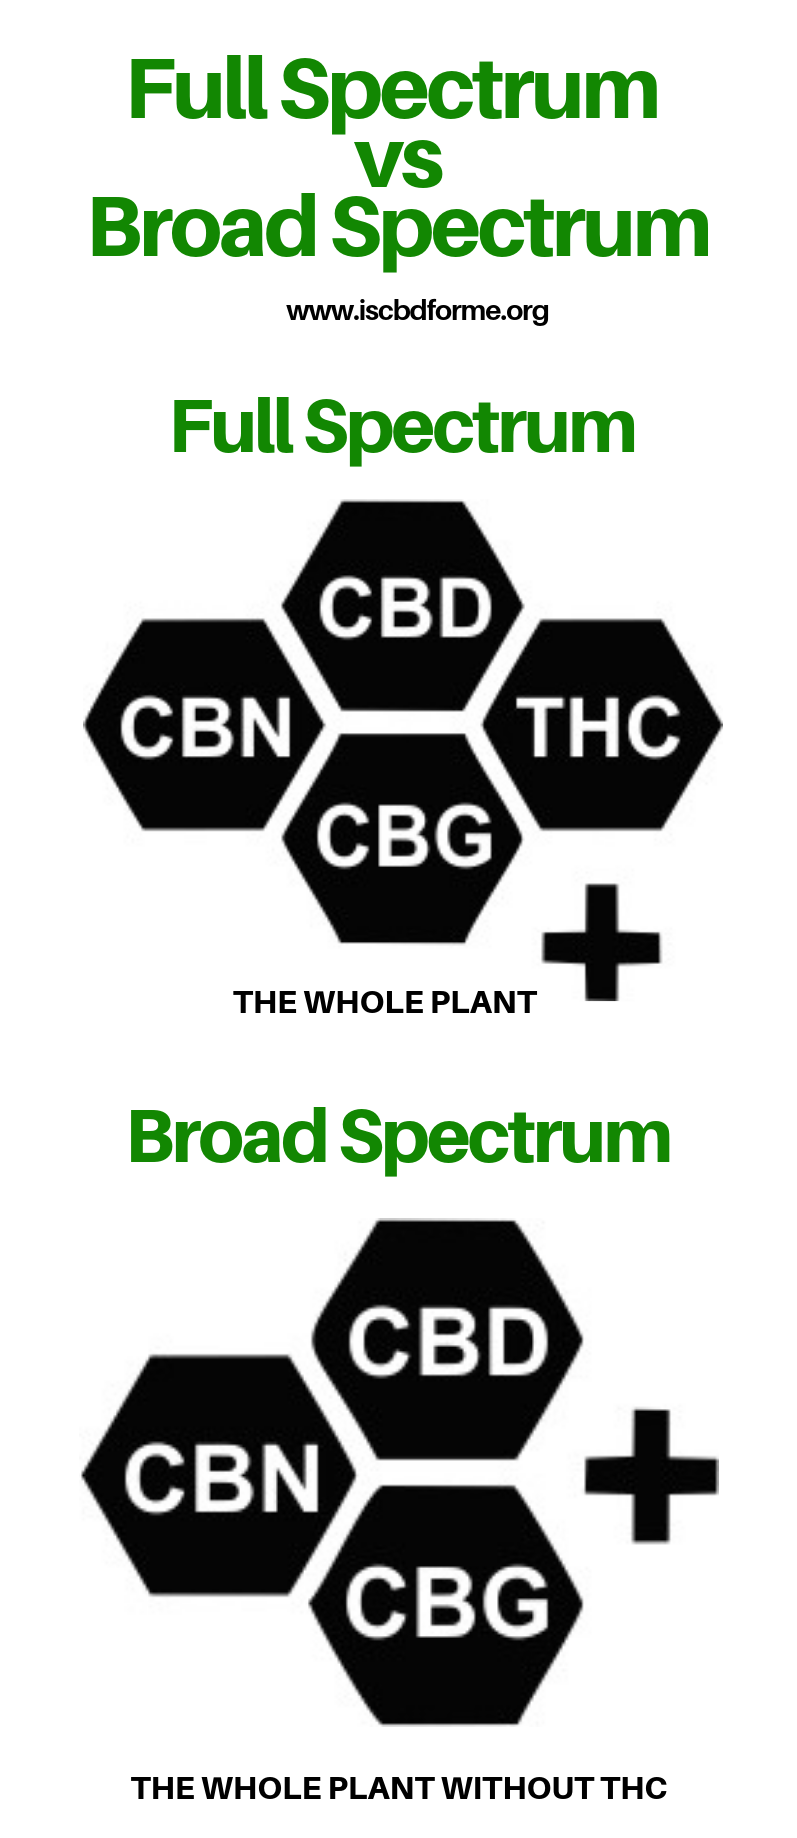 Full Spectrum vs Broad Spectrum CBD